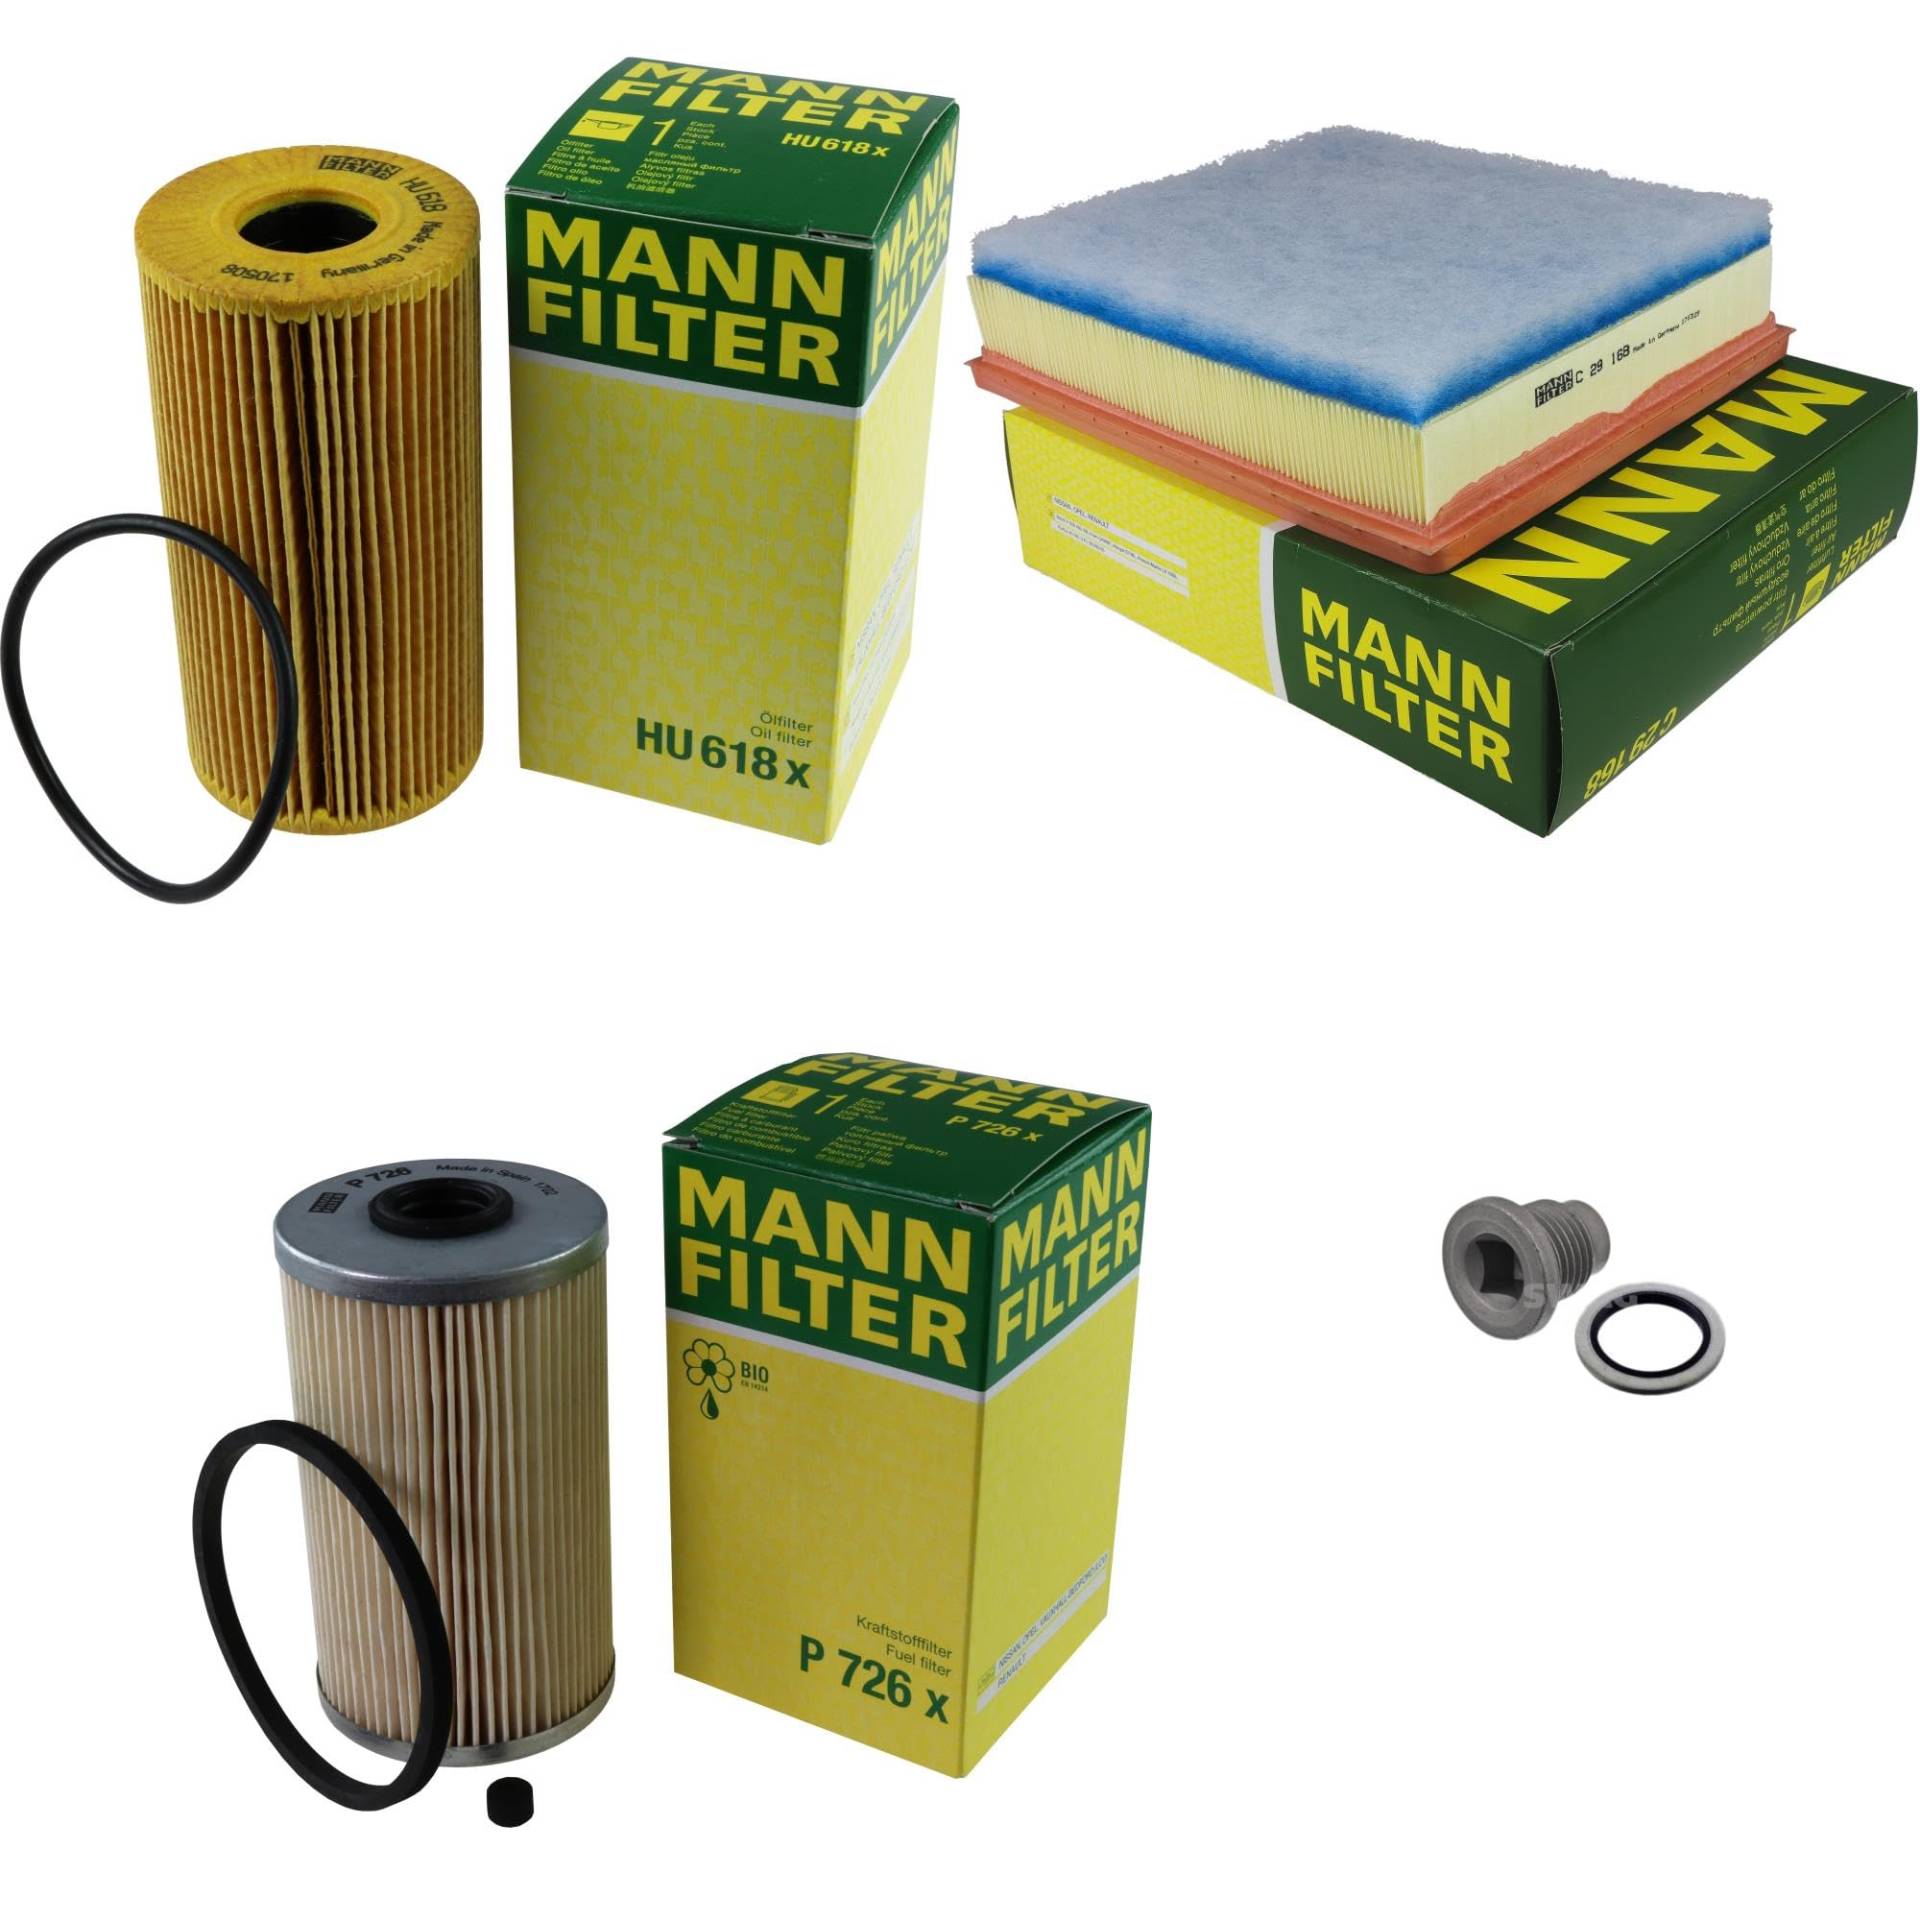 EISENFELS Filter Set Inspektionspaket erstellt mit MANN-FILTER Ölfilter HU 618 x, Luftfilter C 29 168, Kraftstofffilter P 726 x, Verschlussschraube von EISENFELS